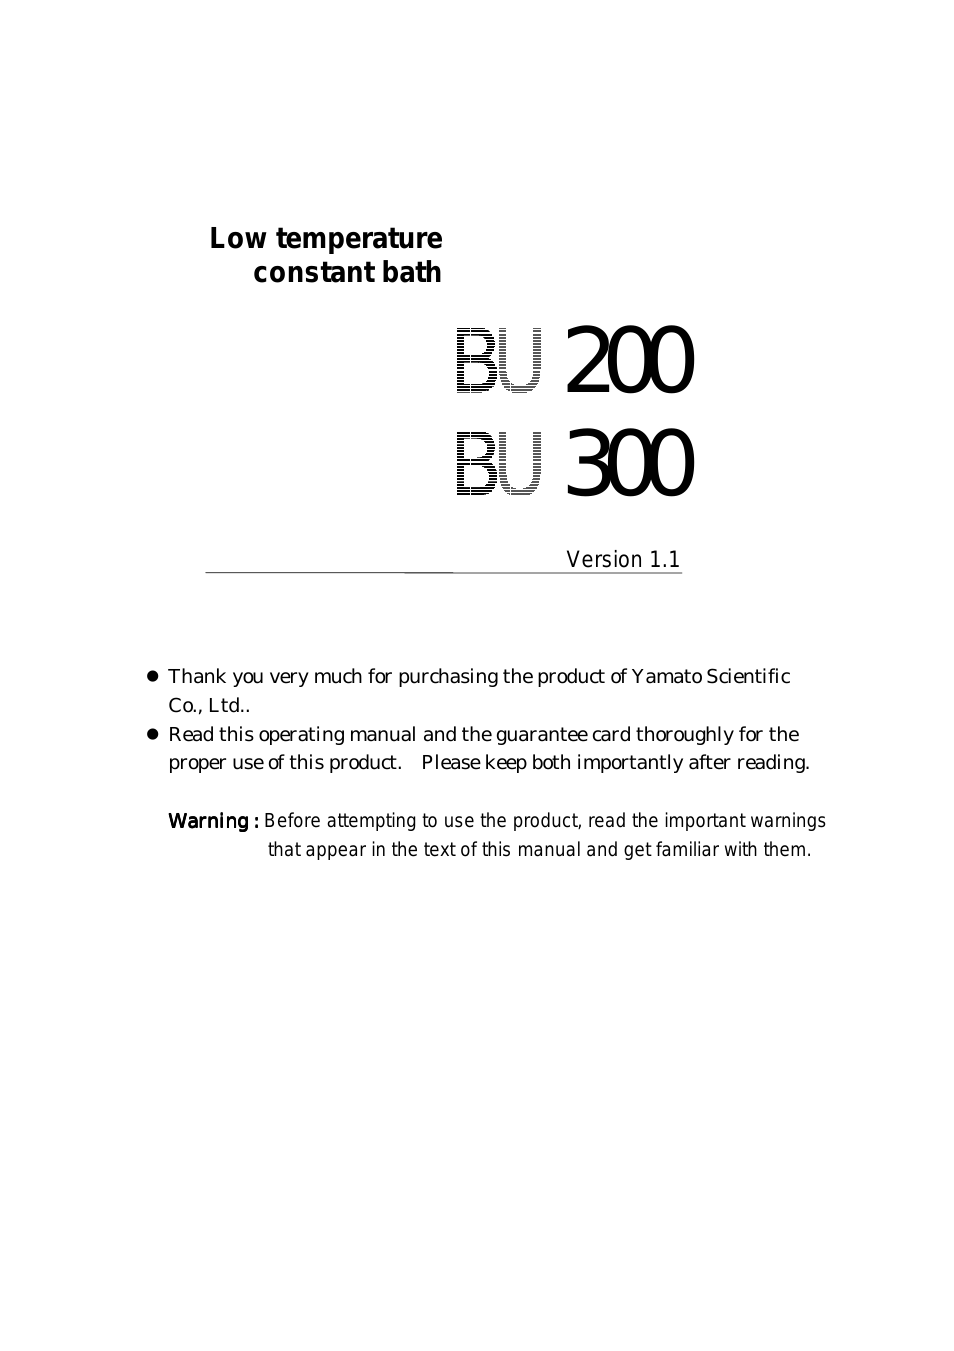 BU300 Low Constant Temperature Water Bath